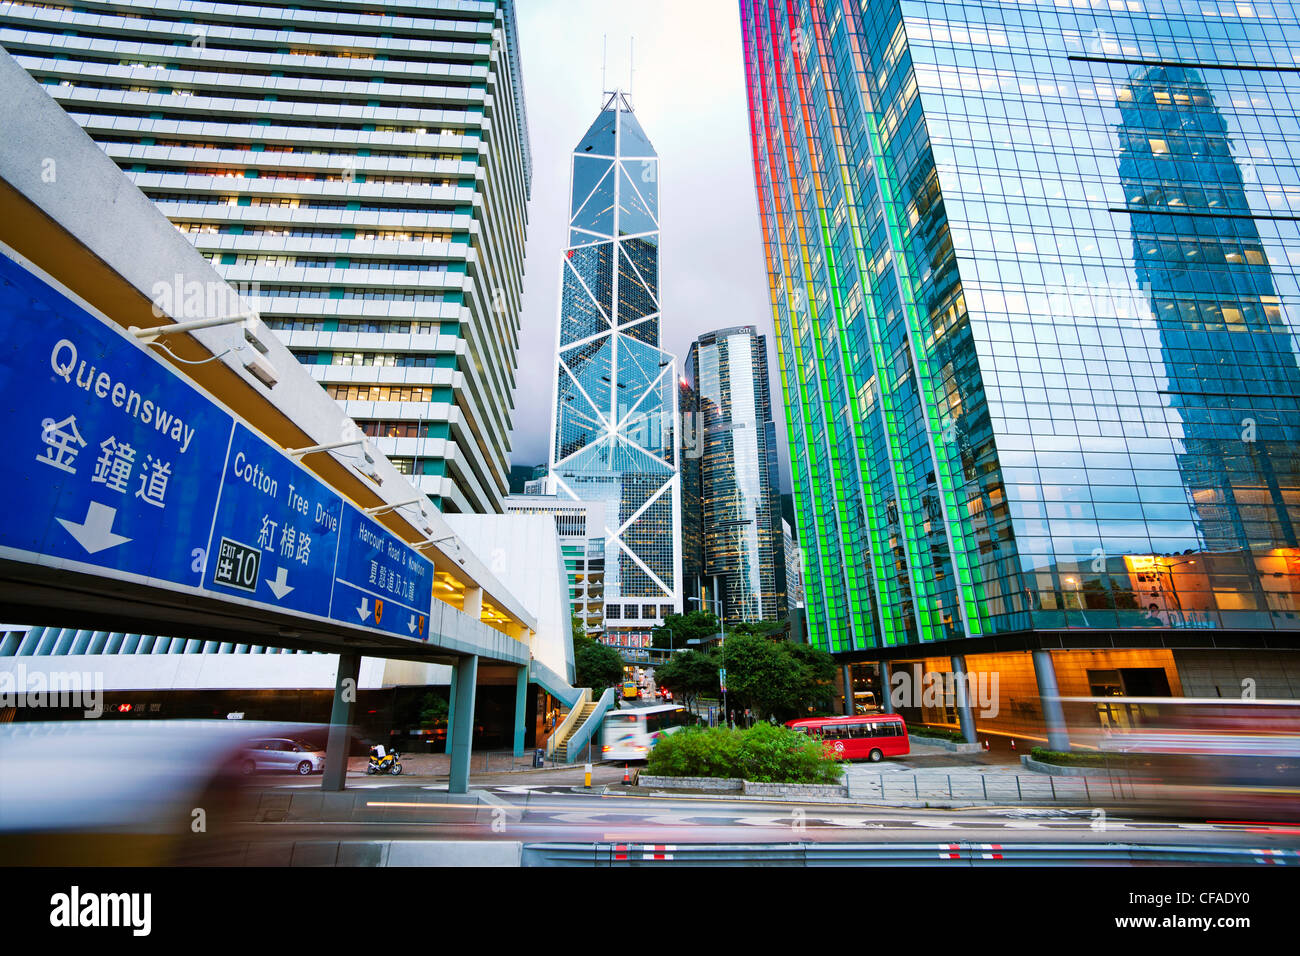 Hong Kong skyline at Dusk, Centre des affaires et du quartier financier, Banque de Chine, l'île de Hong Kong, Chine Banque D'Images